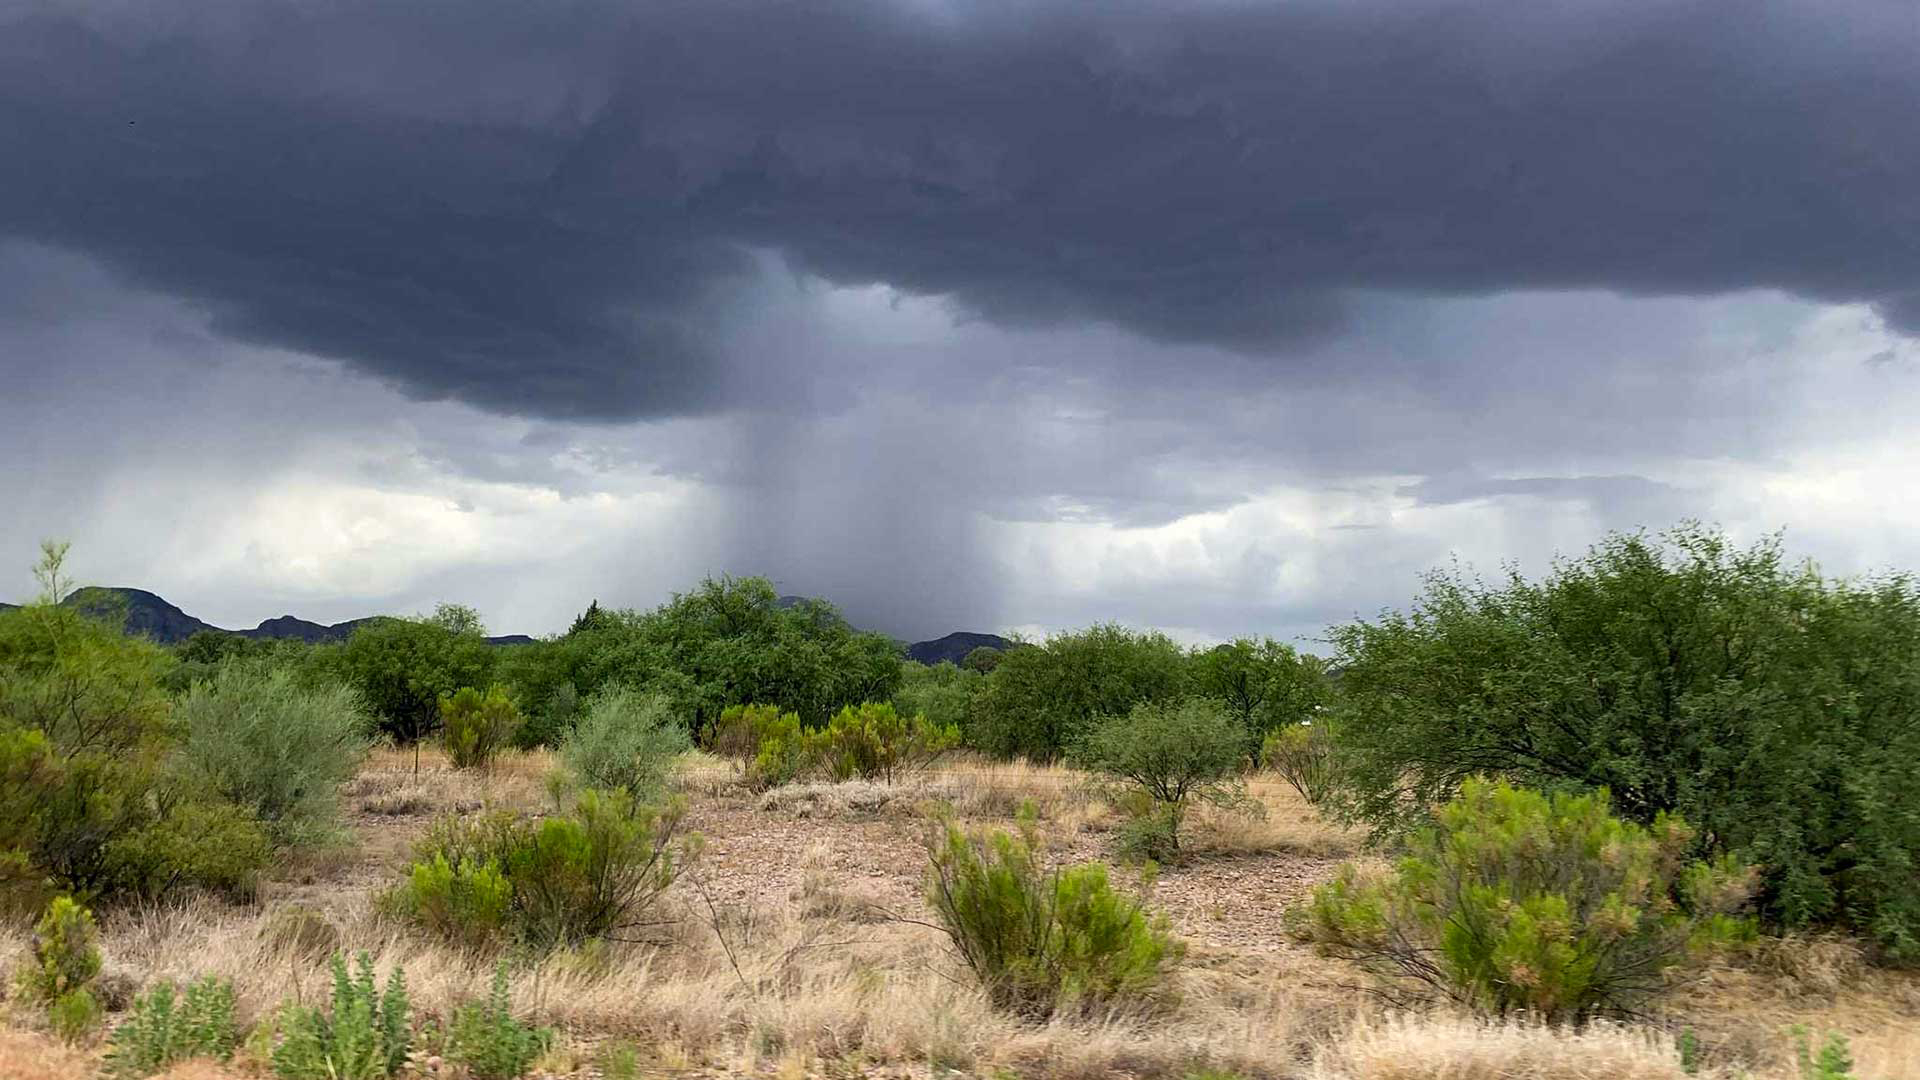 Monsoon rain falls in southern Arizona.